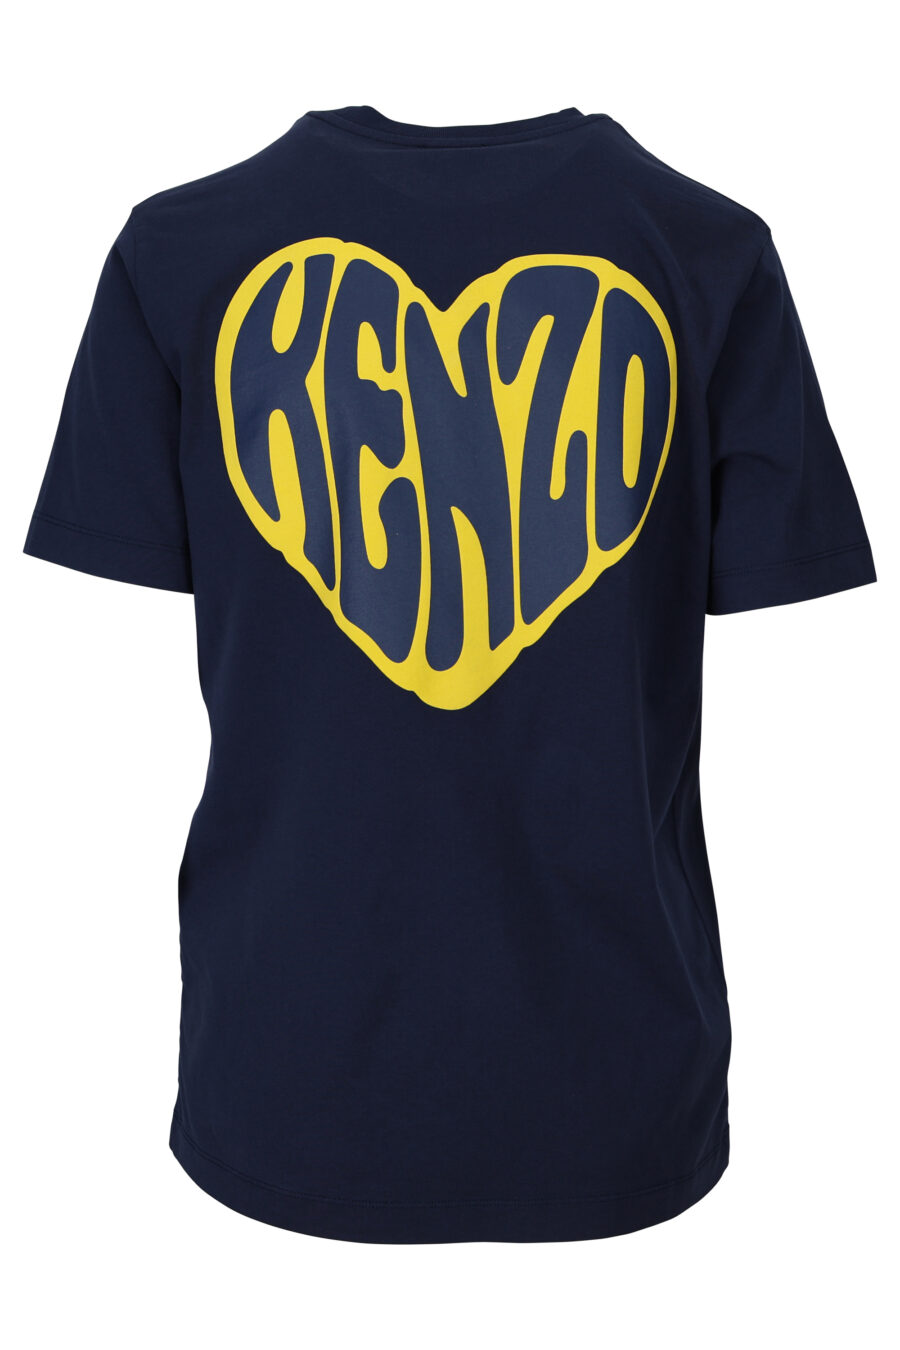 T-shirt bleu foncé avec mini-logo en forme de cœur jaune - 3612230511040 1